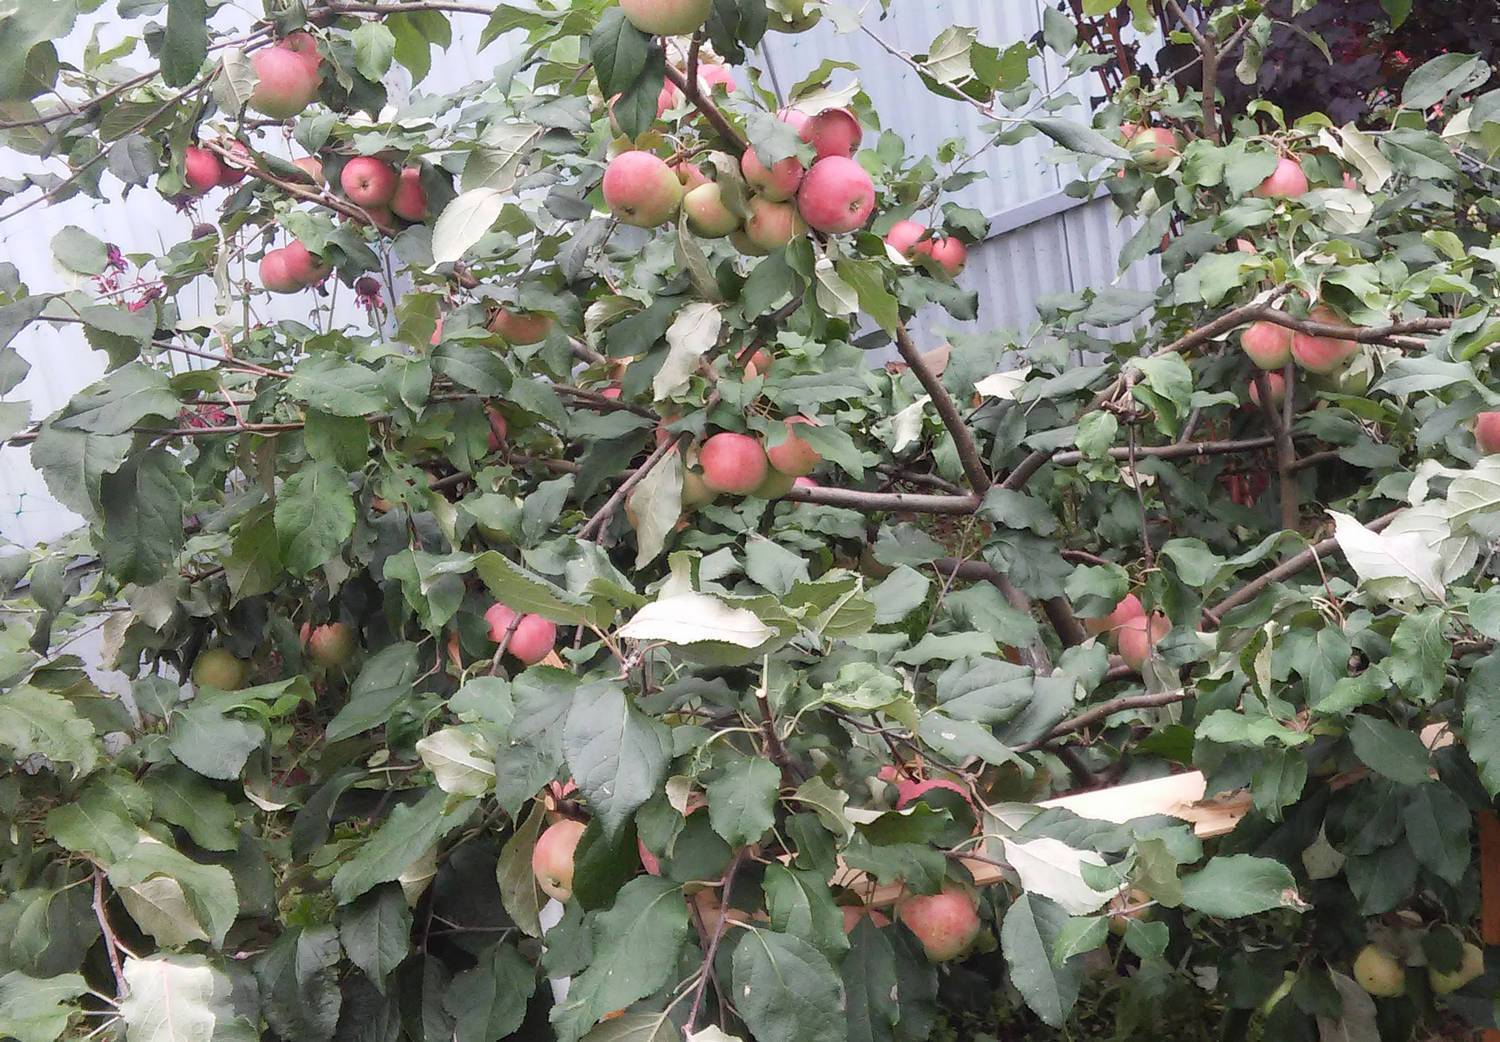 Карликовая яблоня чудное: описание сорта, фото, отзывы садоводов и морозостойкость